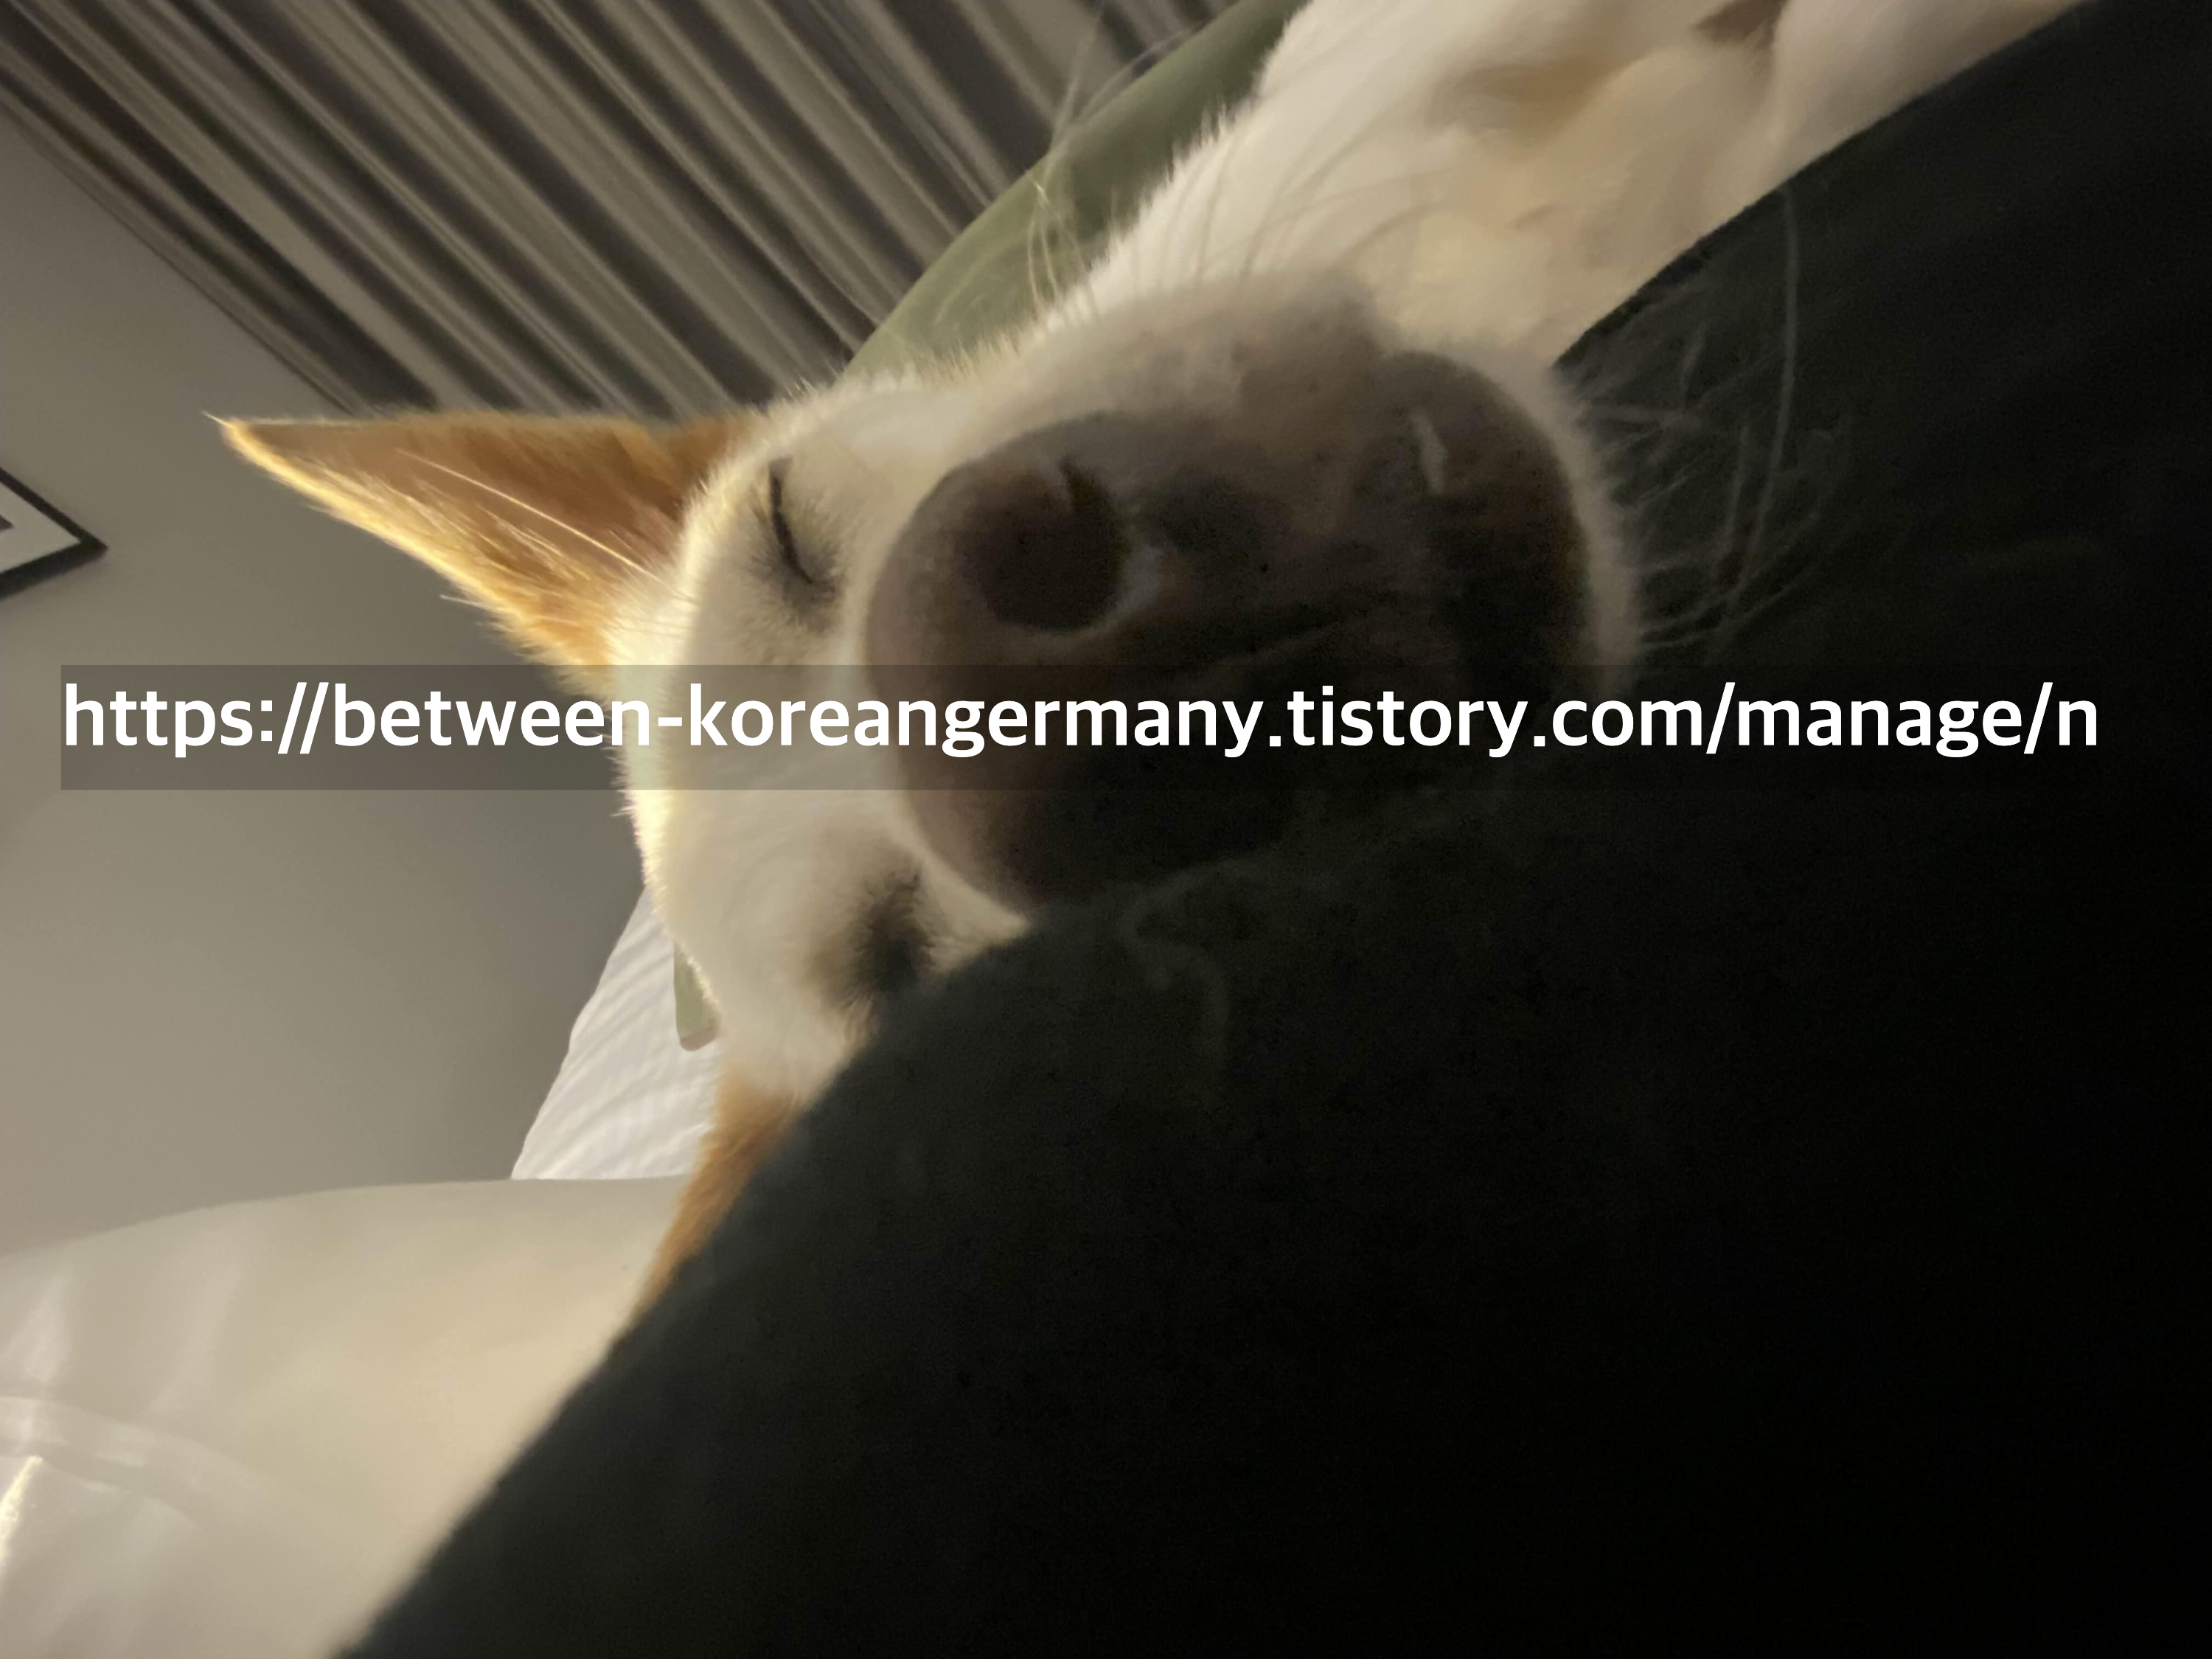 누워서 눈을 감고 있는 귀가 뾰족한 흰색 강아지